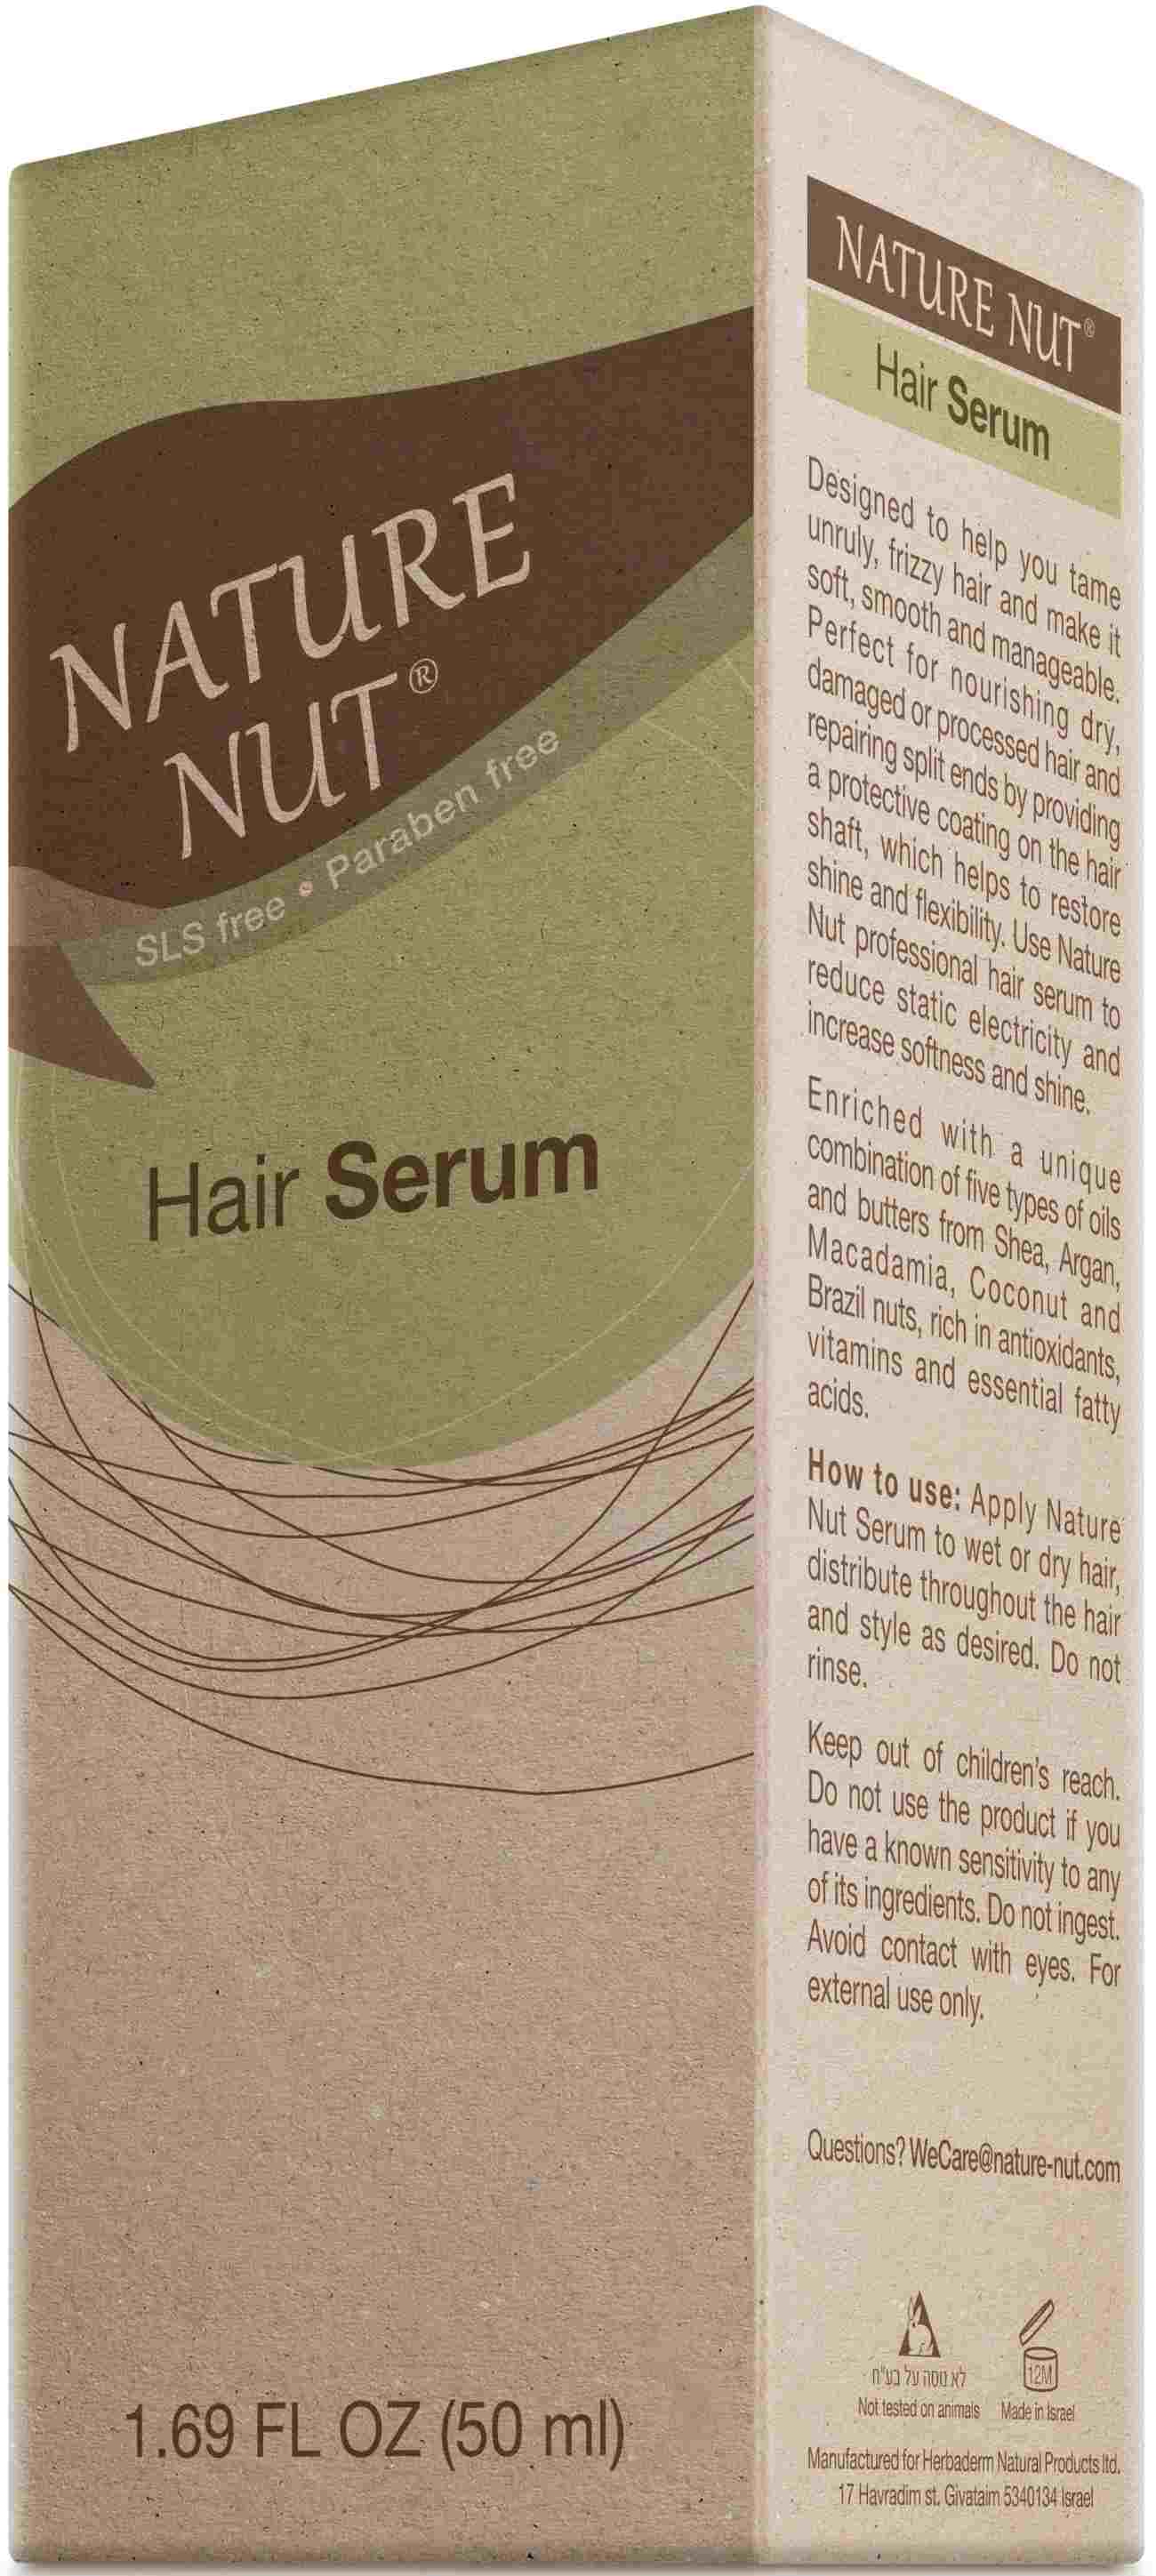 Hair Serum Box